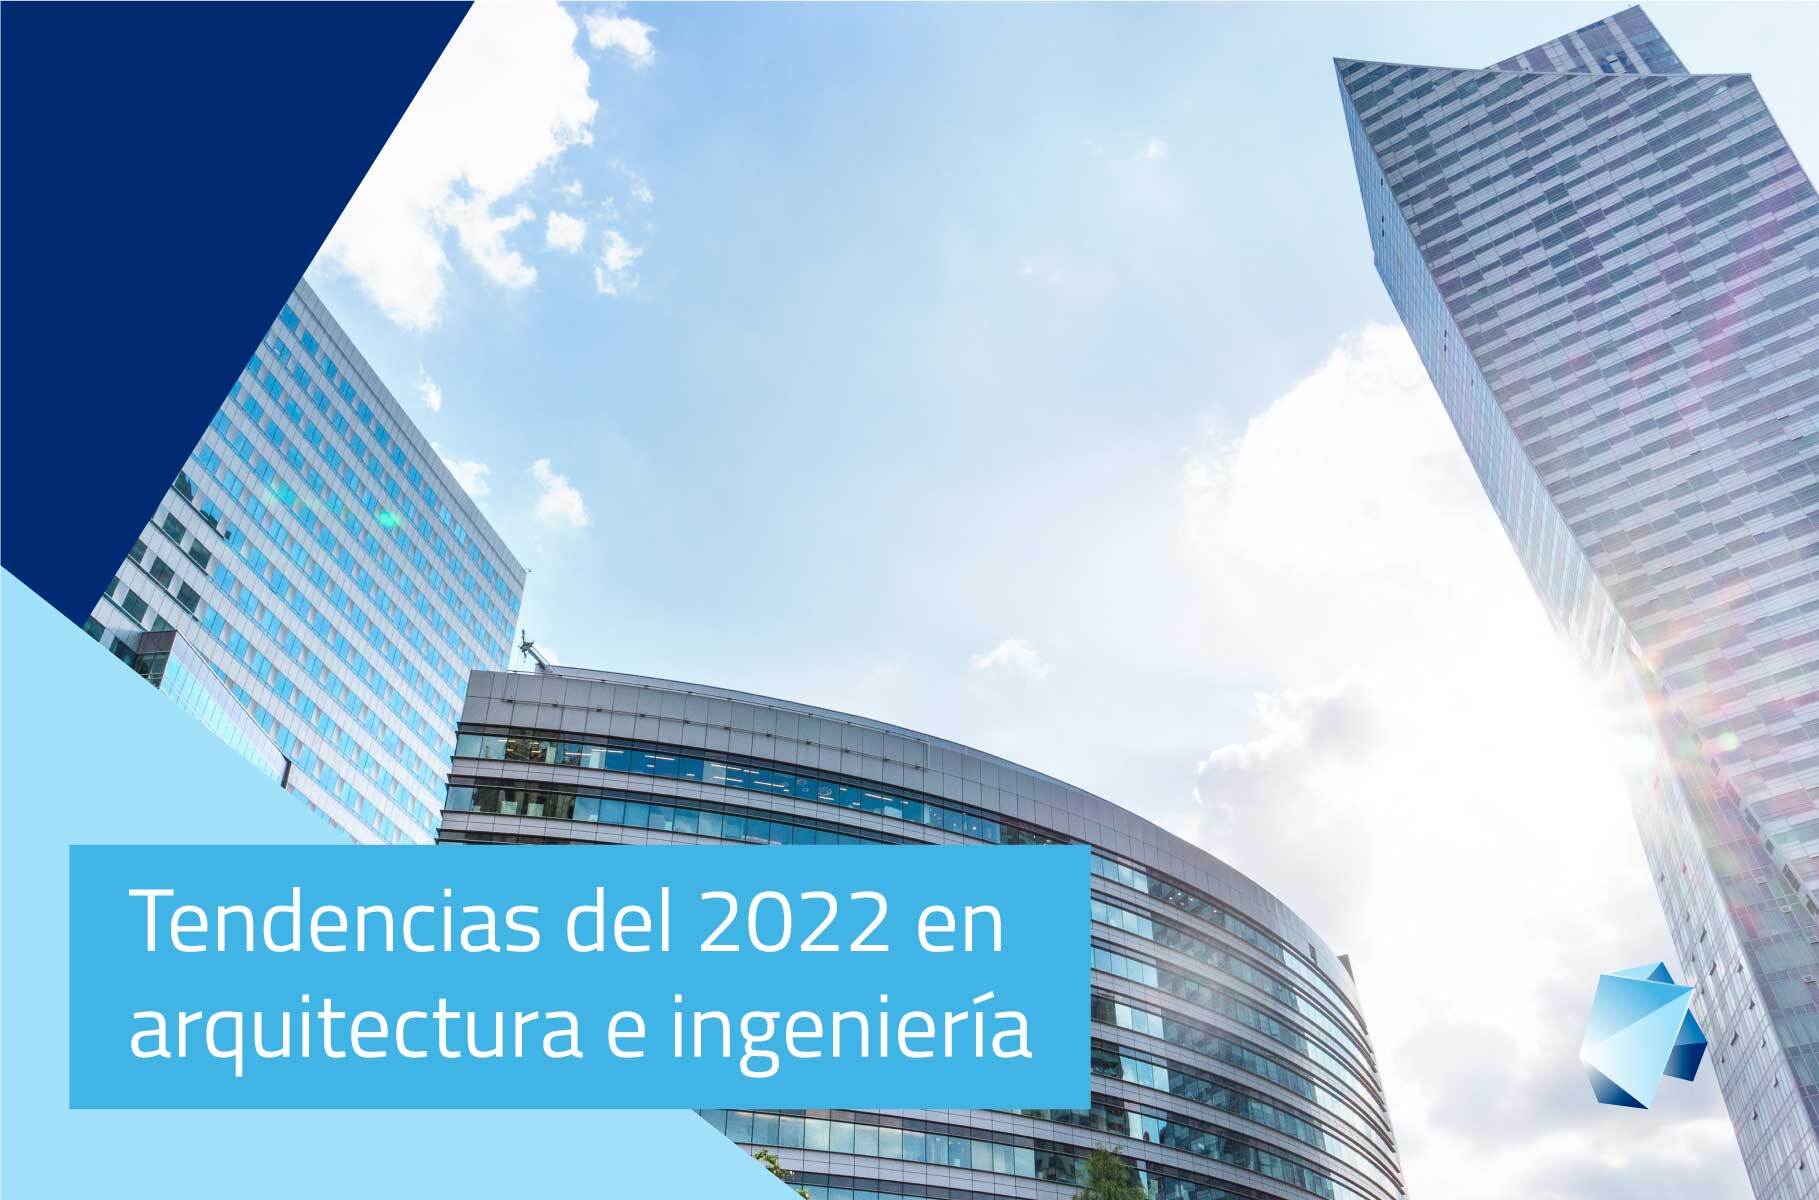 Tendencias BIM del 2022 en arquitectura e ingeniería